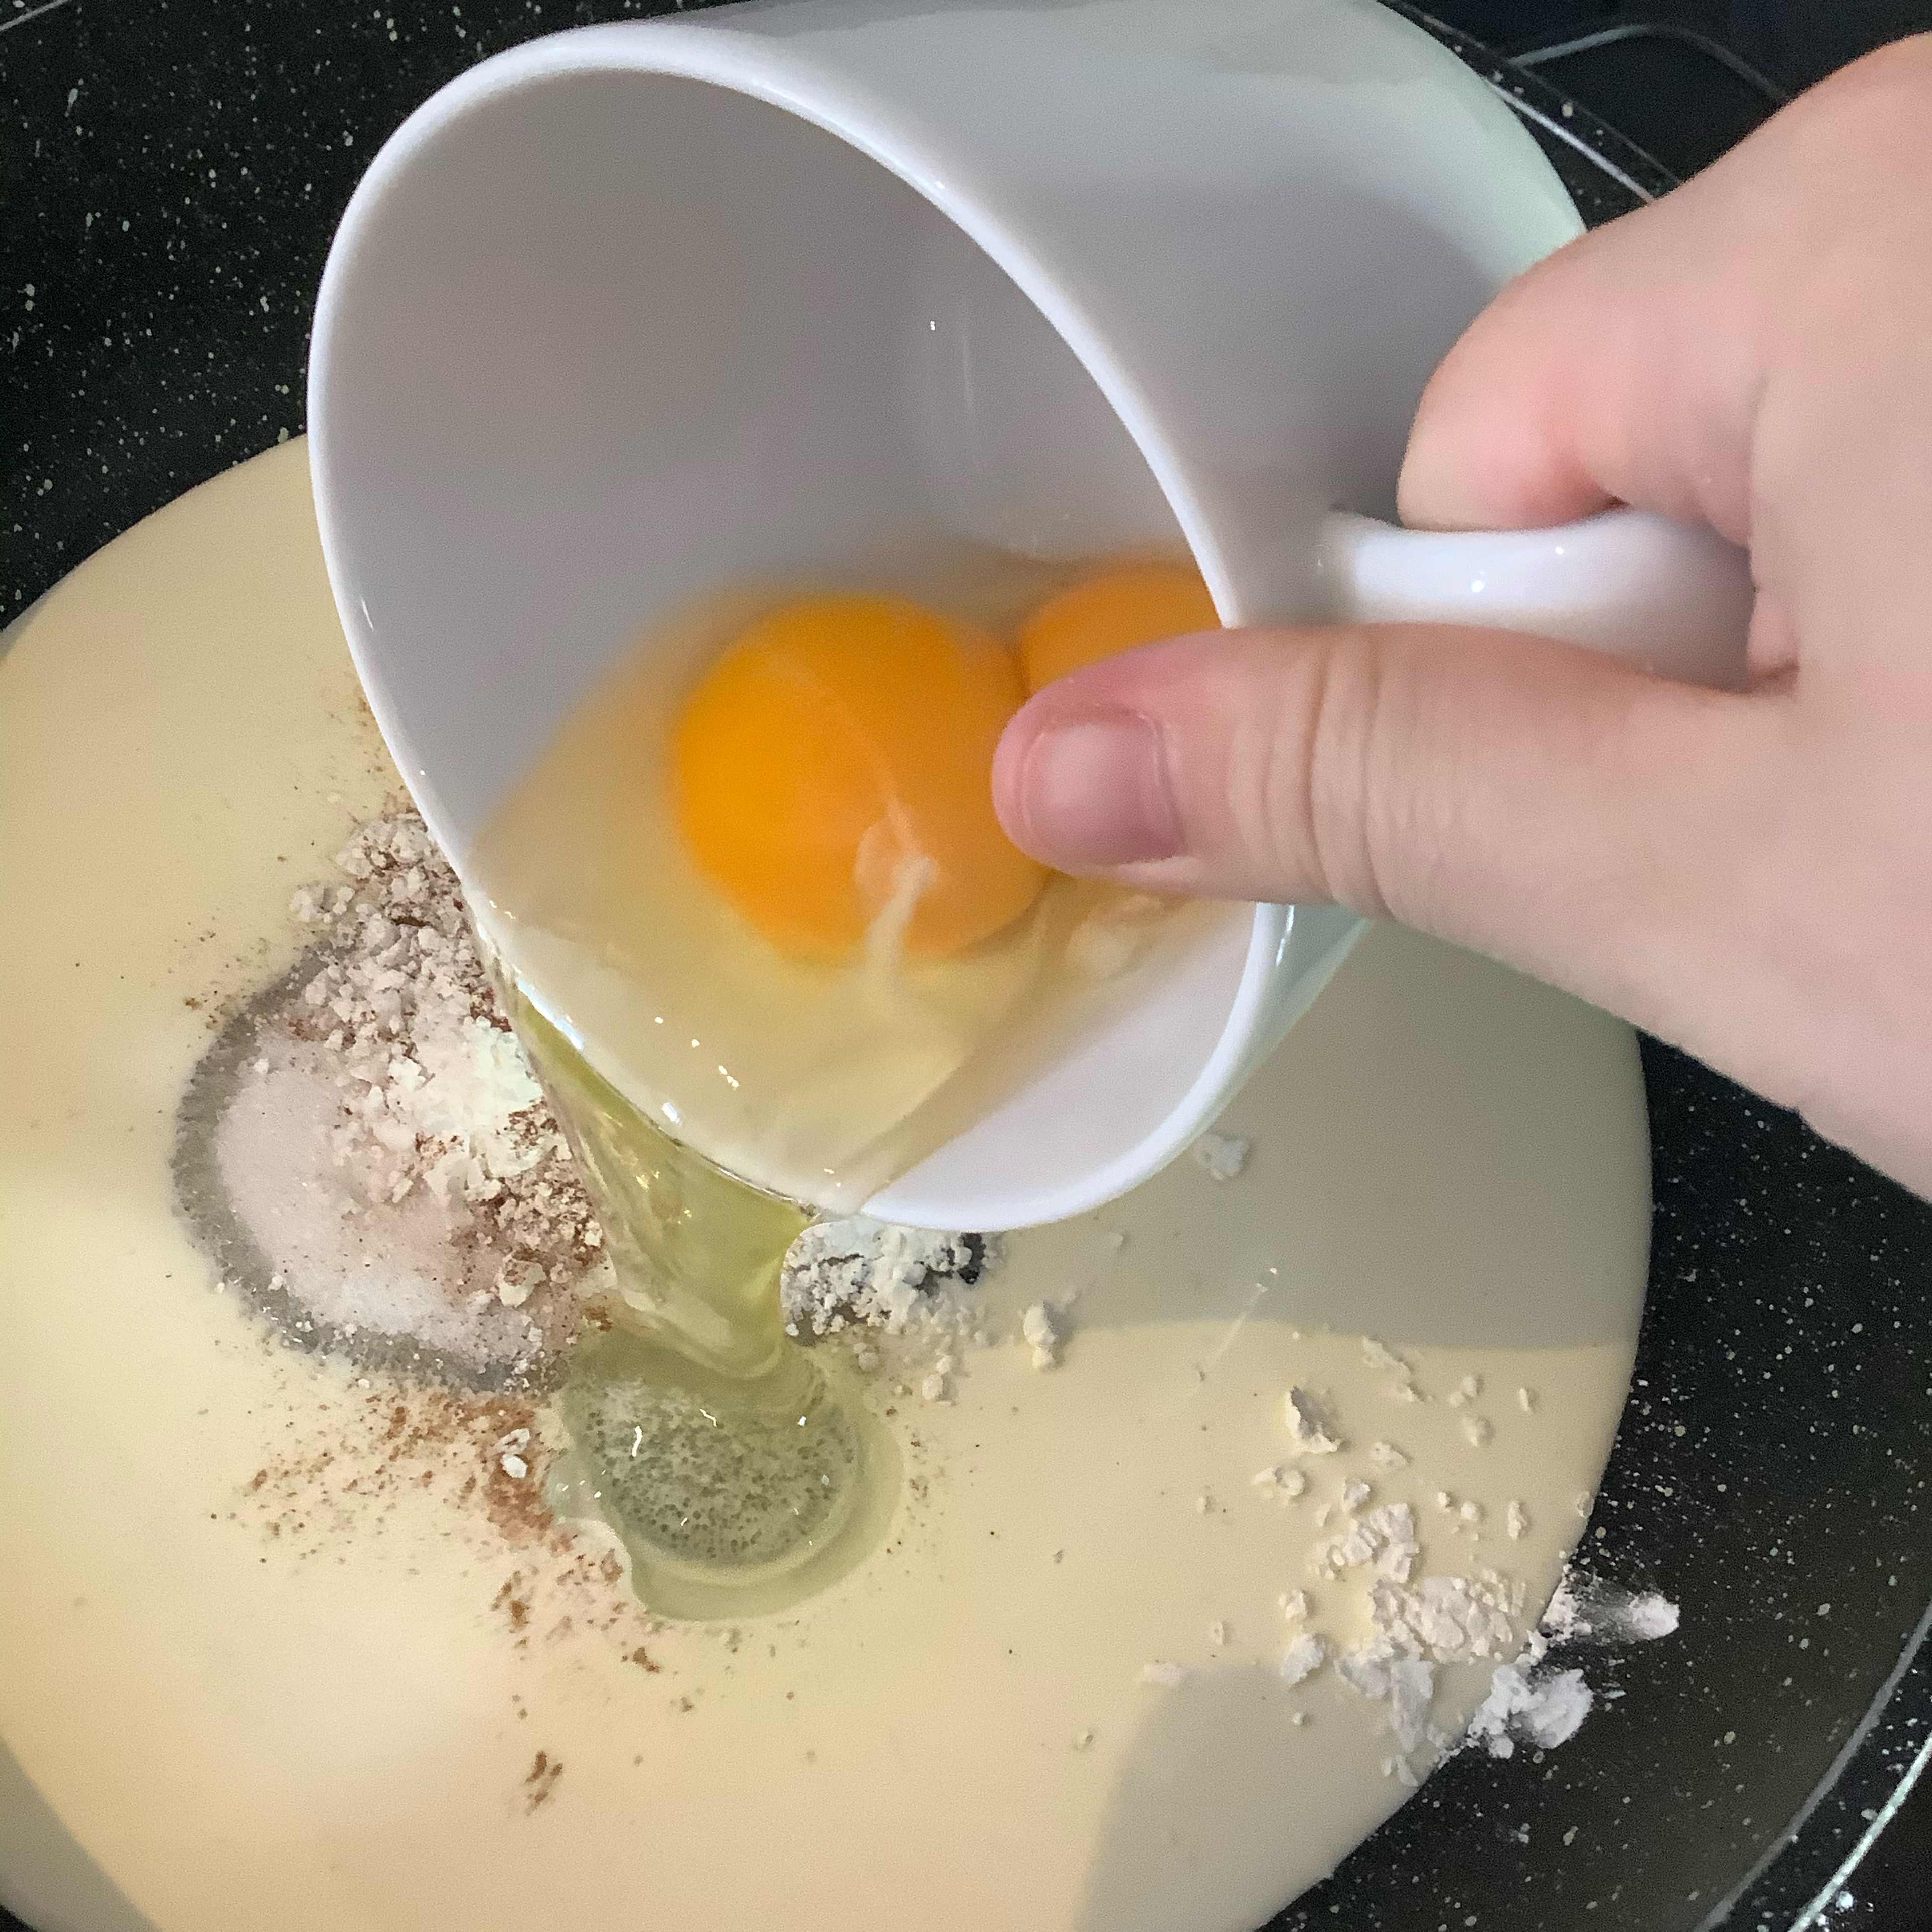 Das Ei hinzufügen. Vergiss nicht beim zweiten Ei benötigst du nur das Eigelb, so wird deine Masse cremiger.